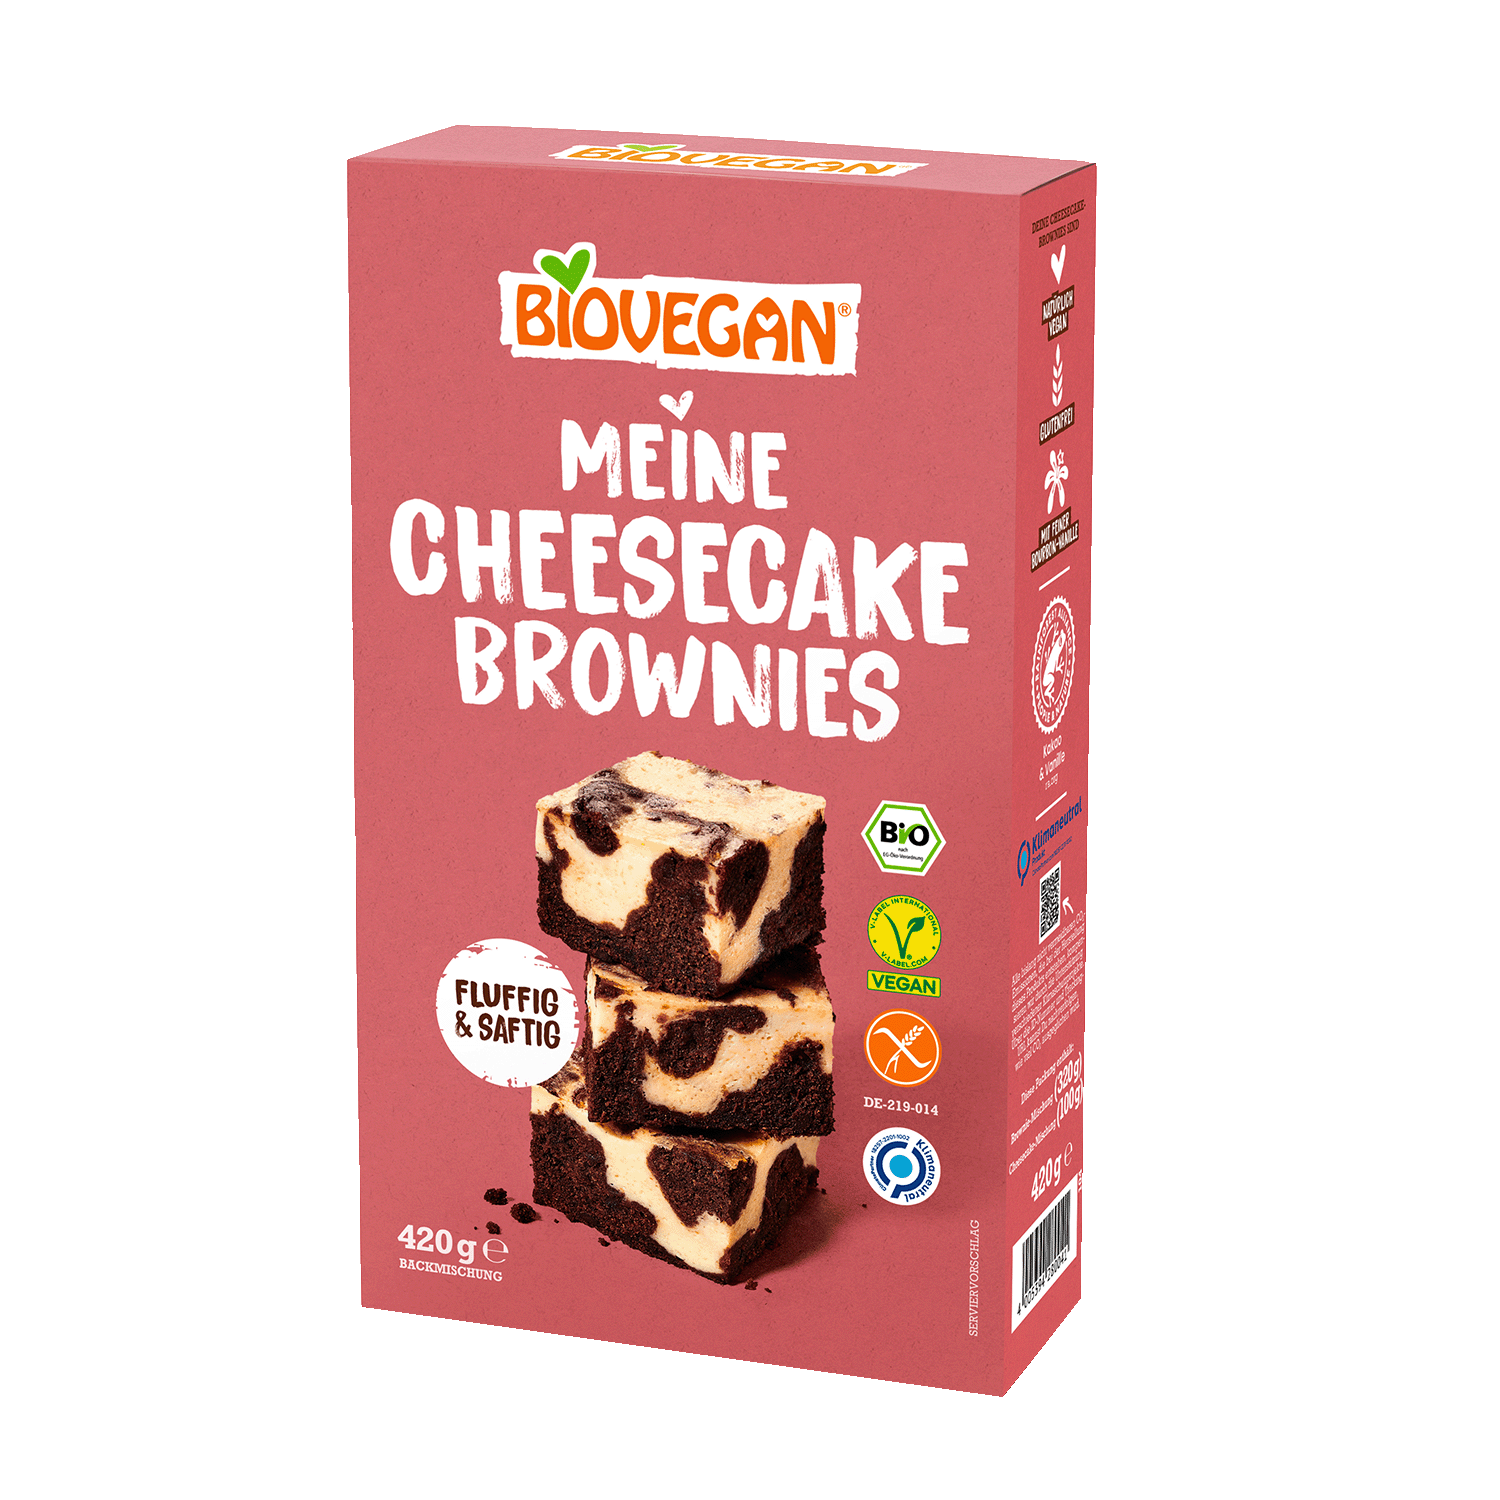 egan baking mix My cheesecake brownies, Organic, 420g